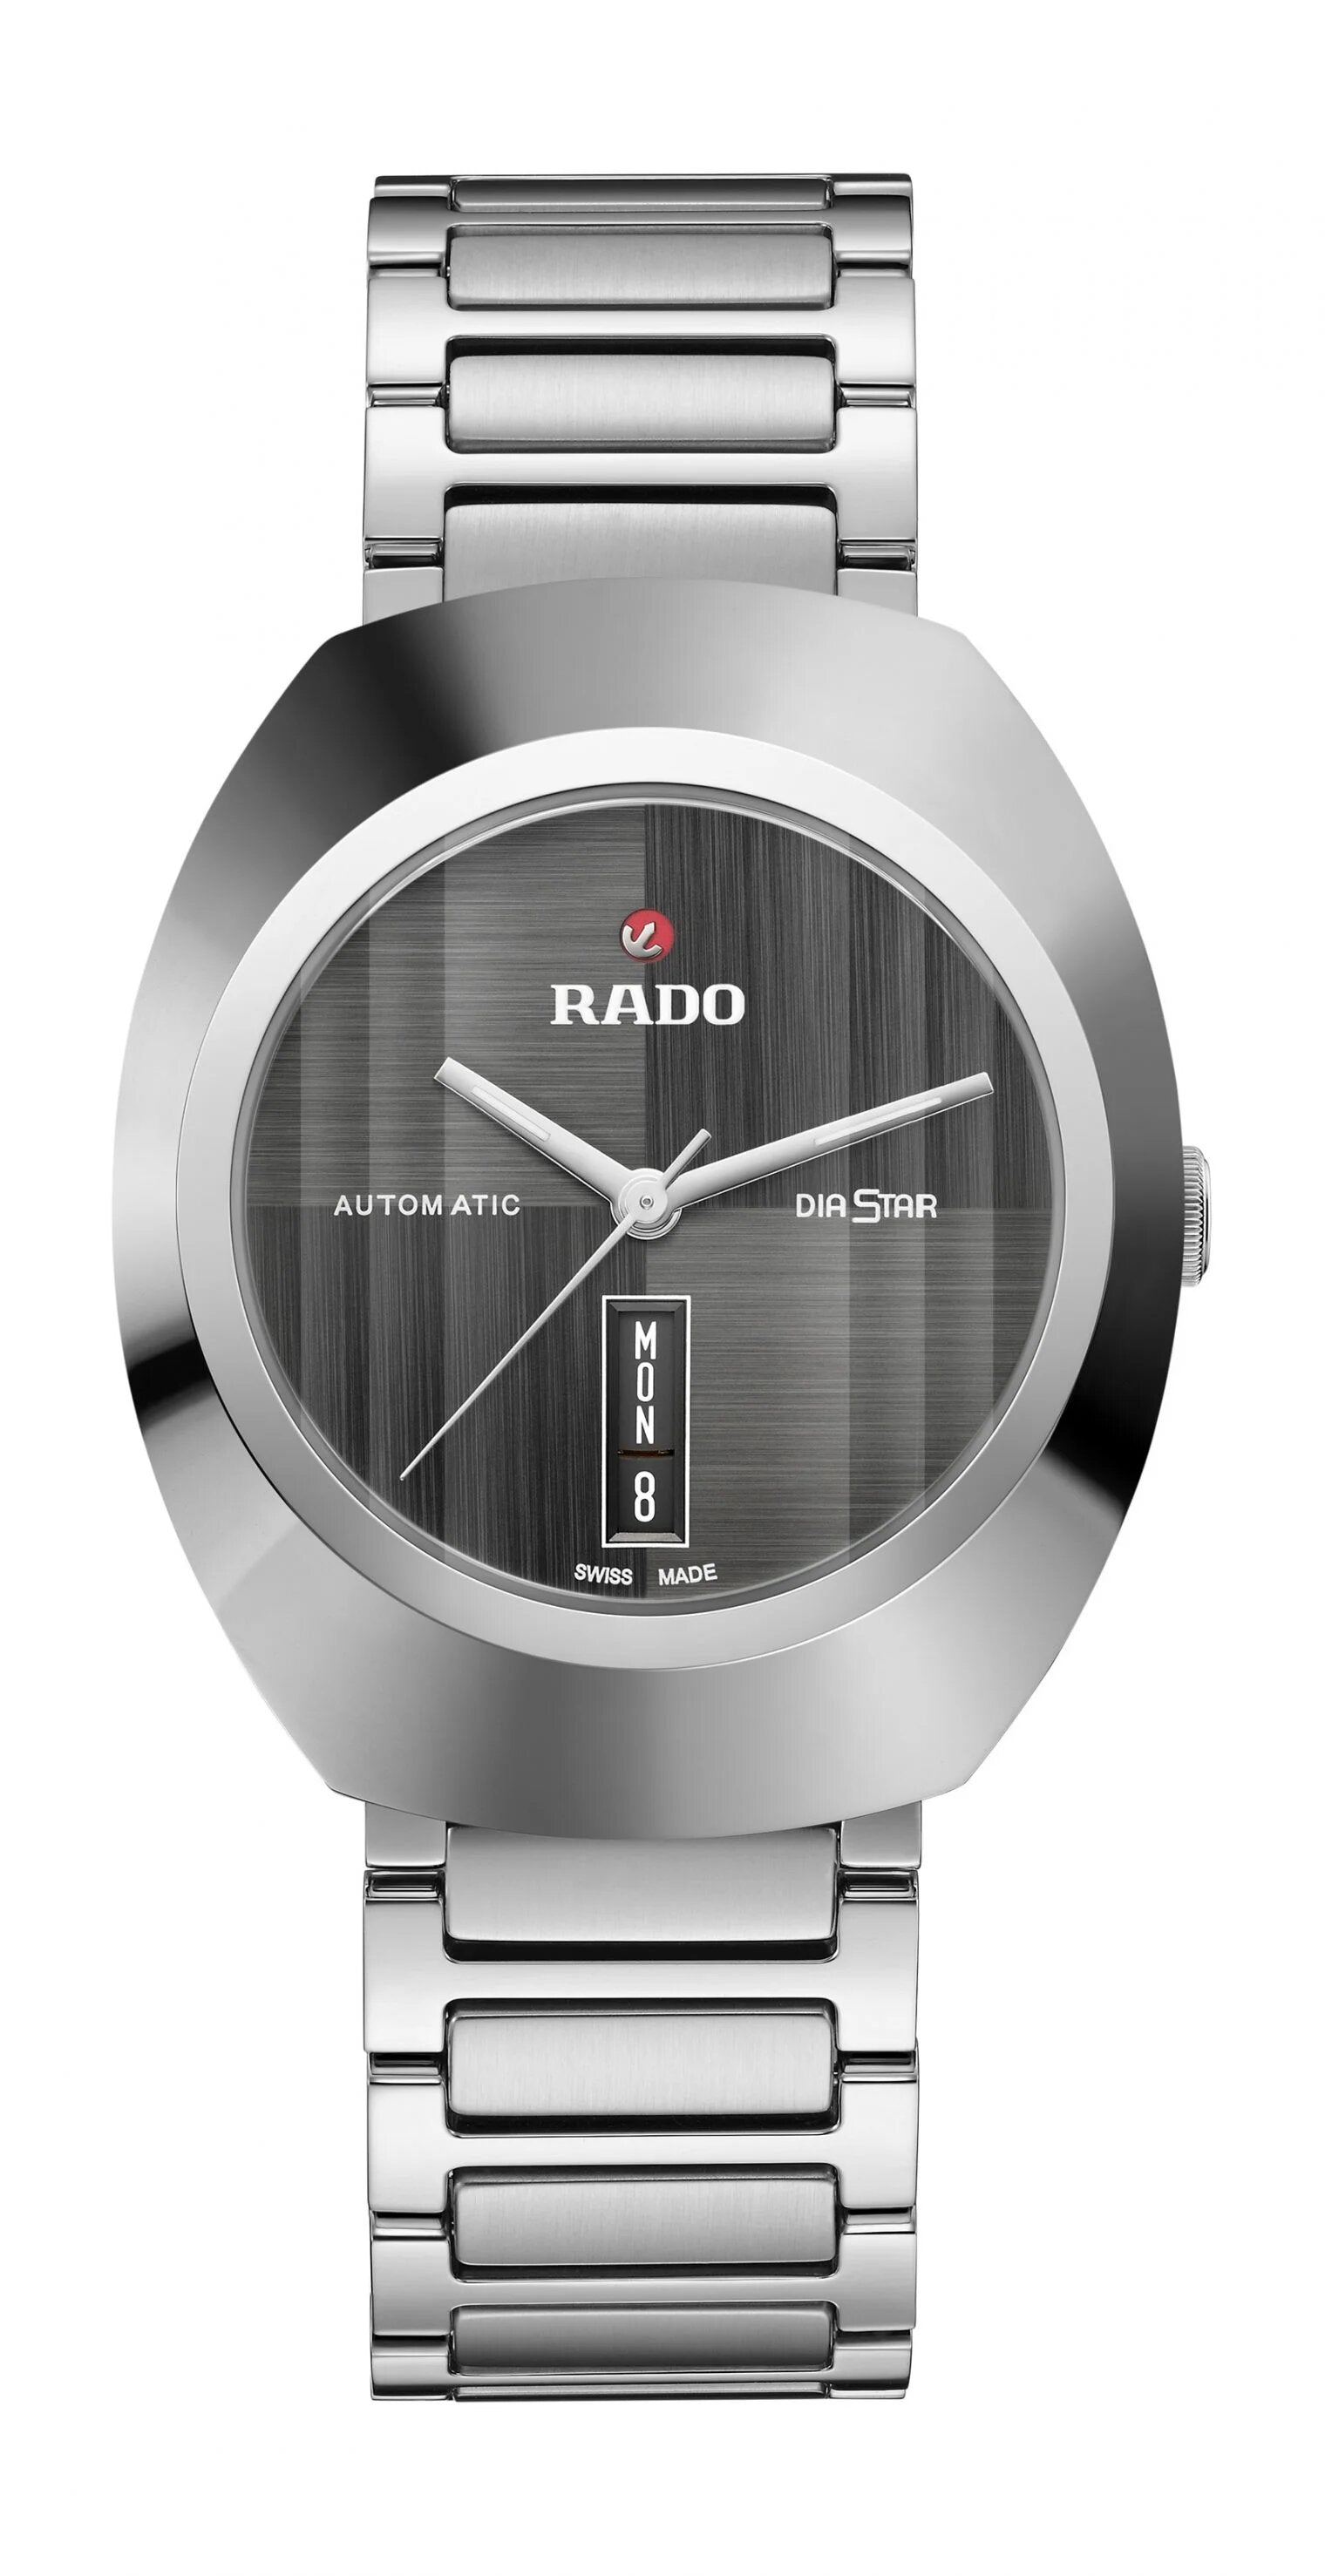 Rado DiaStar Original Limited Edition Automatic Unisex Watch R12160103